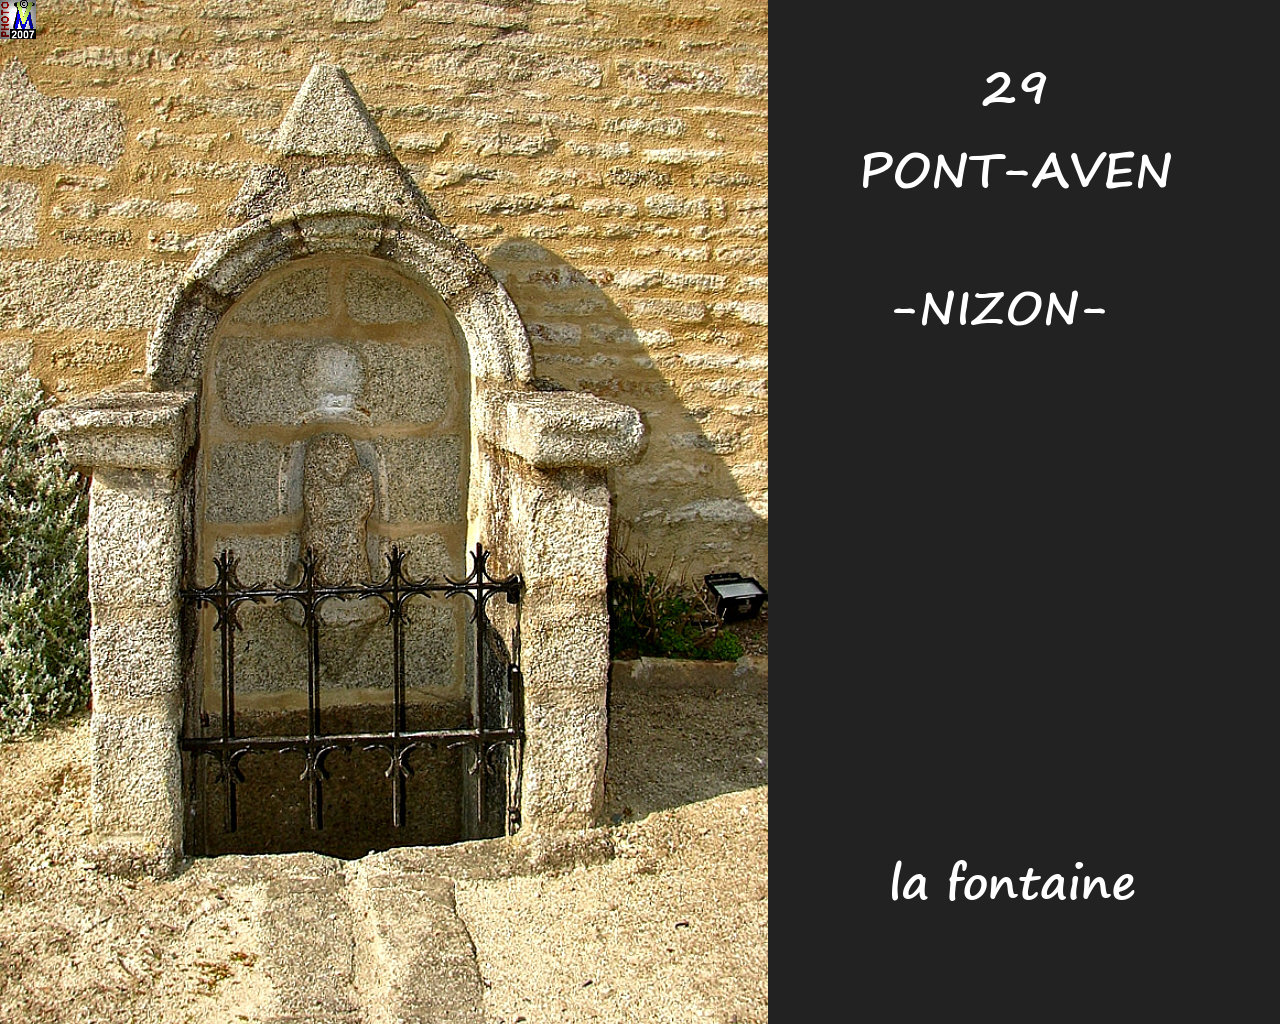 29PONT-AVEN-NIZON_fontaine_100.jpg